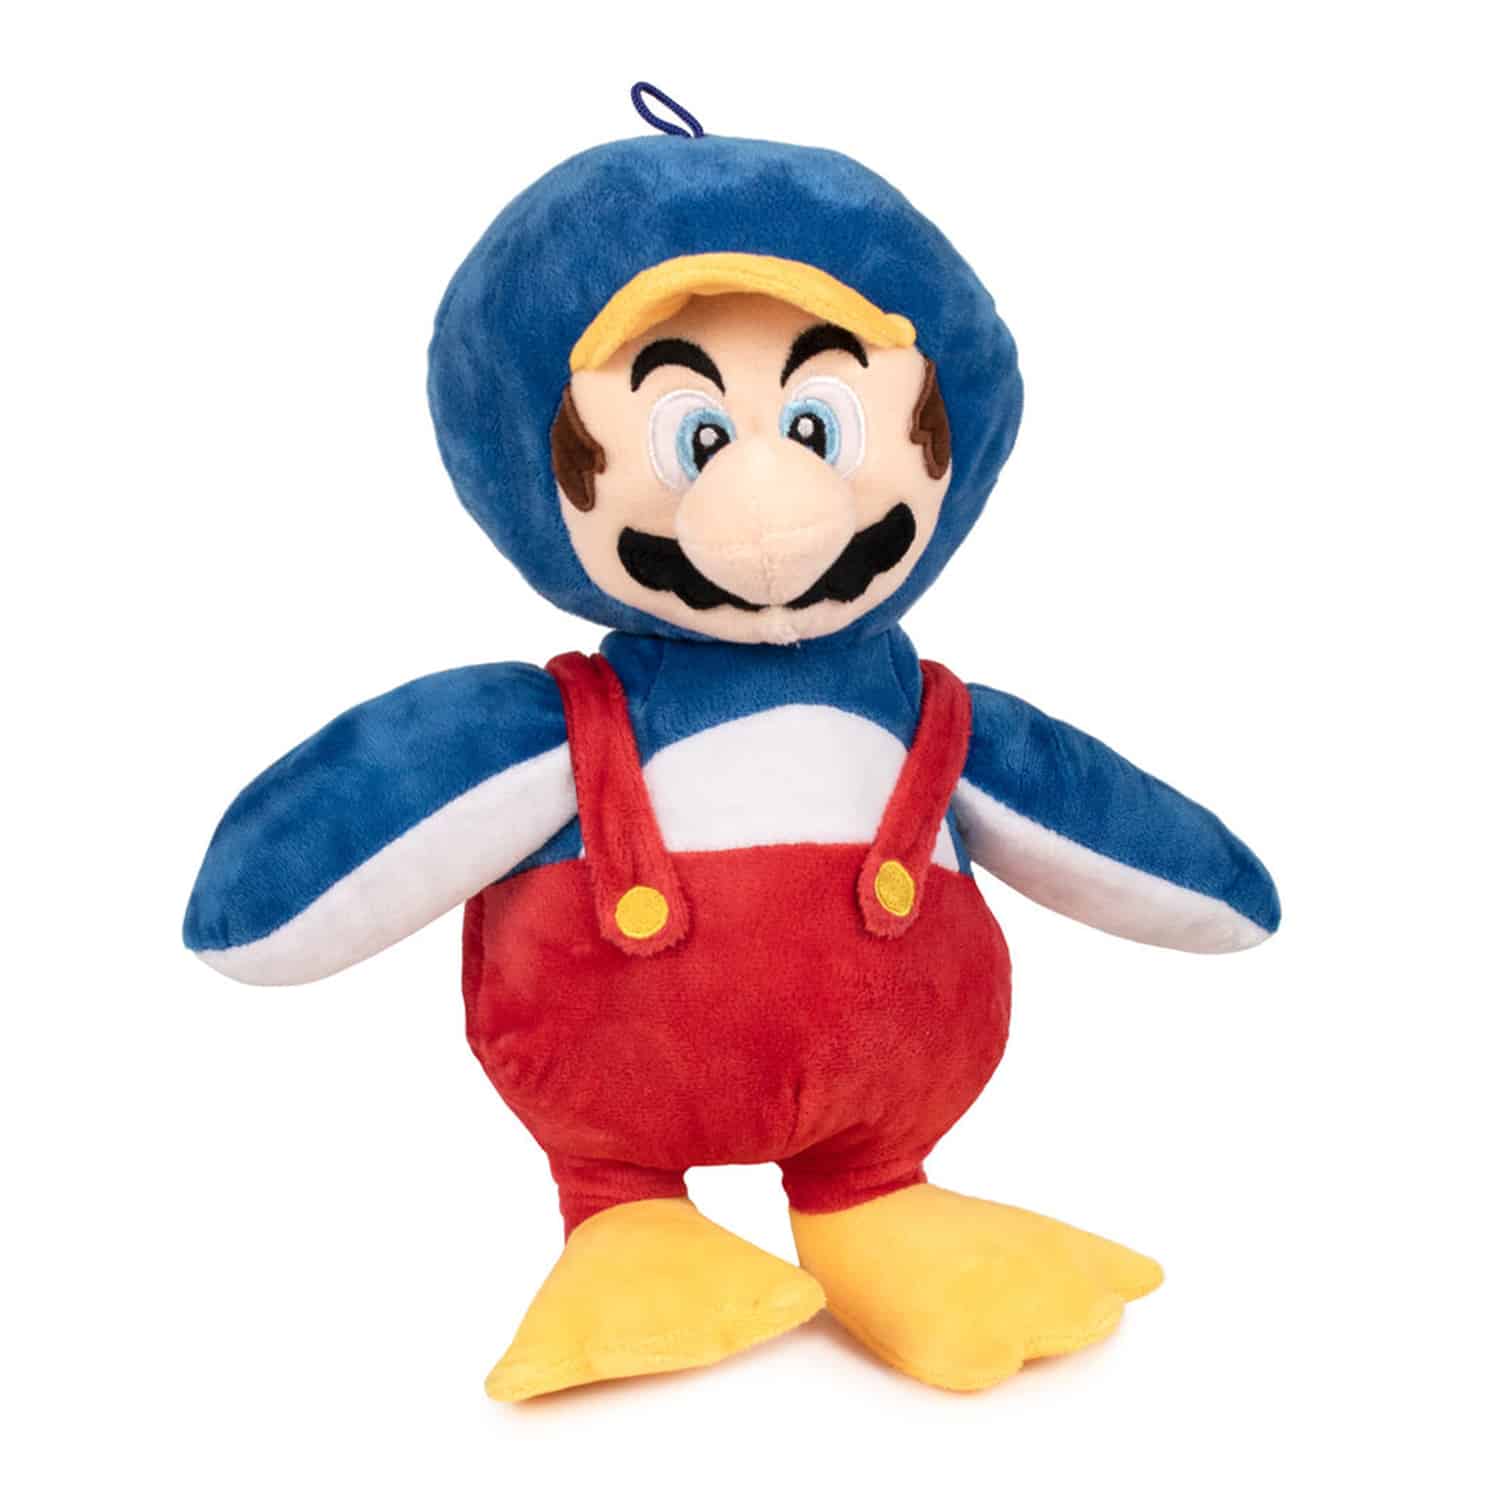 Super Mario -Penguin Mario Plush Toy